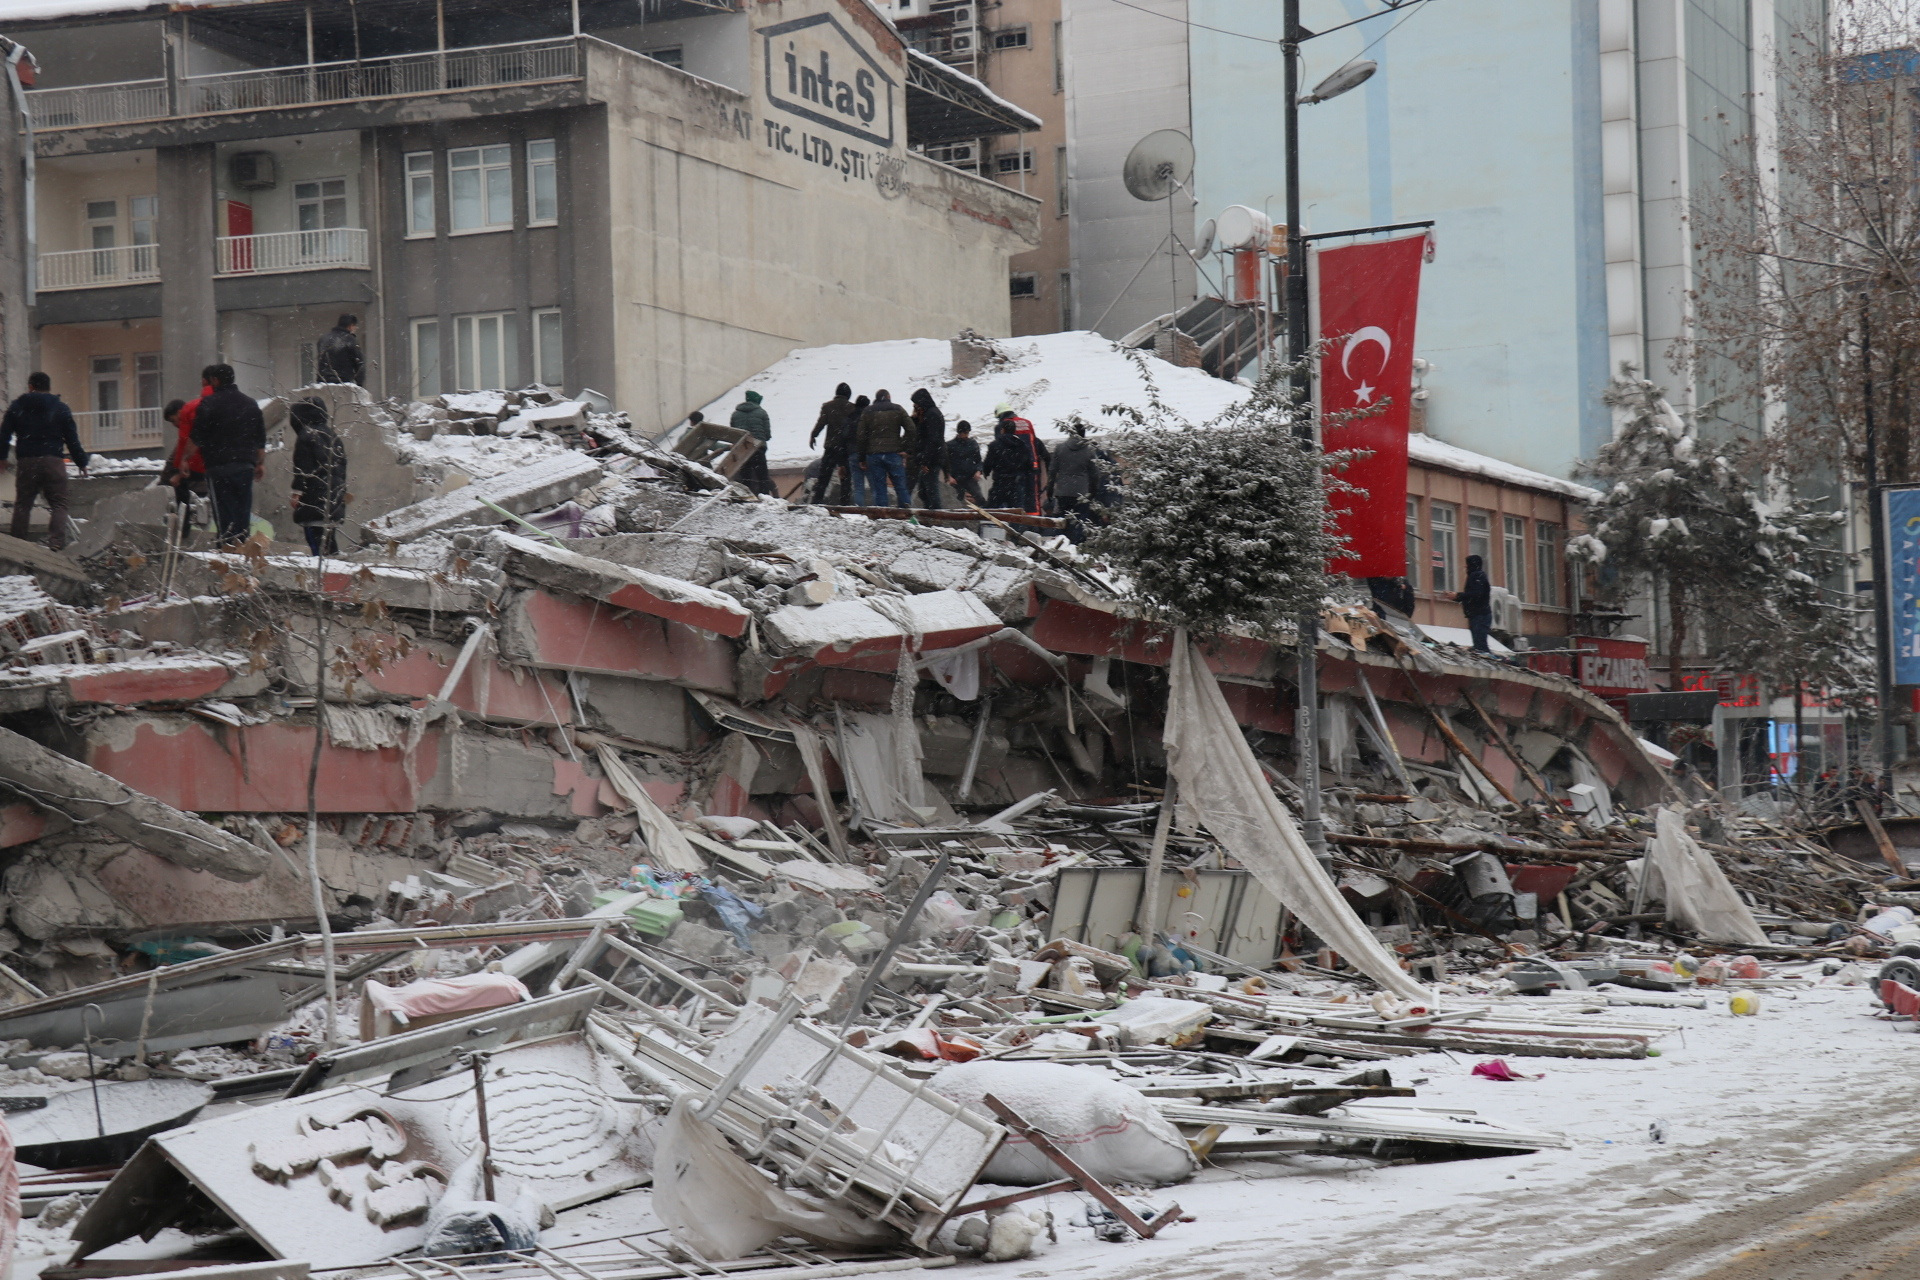 Los rescatistas sacan a una persona de un edificio derrumbado después de un terremoto en Malatya, Turquía. Agencia de noticias Ihlas (IHA) vía REUTERS
